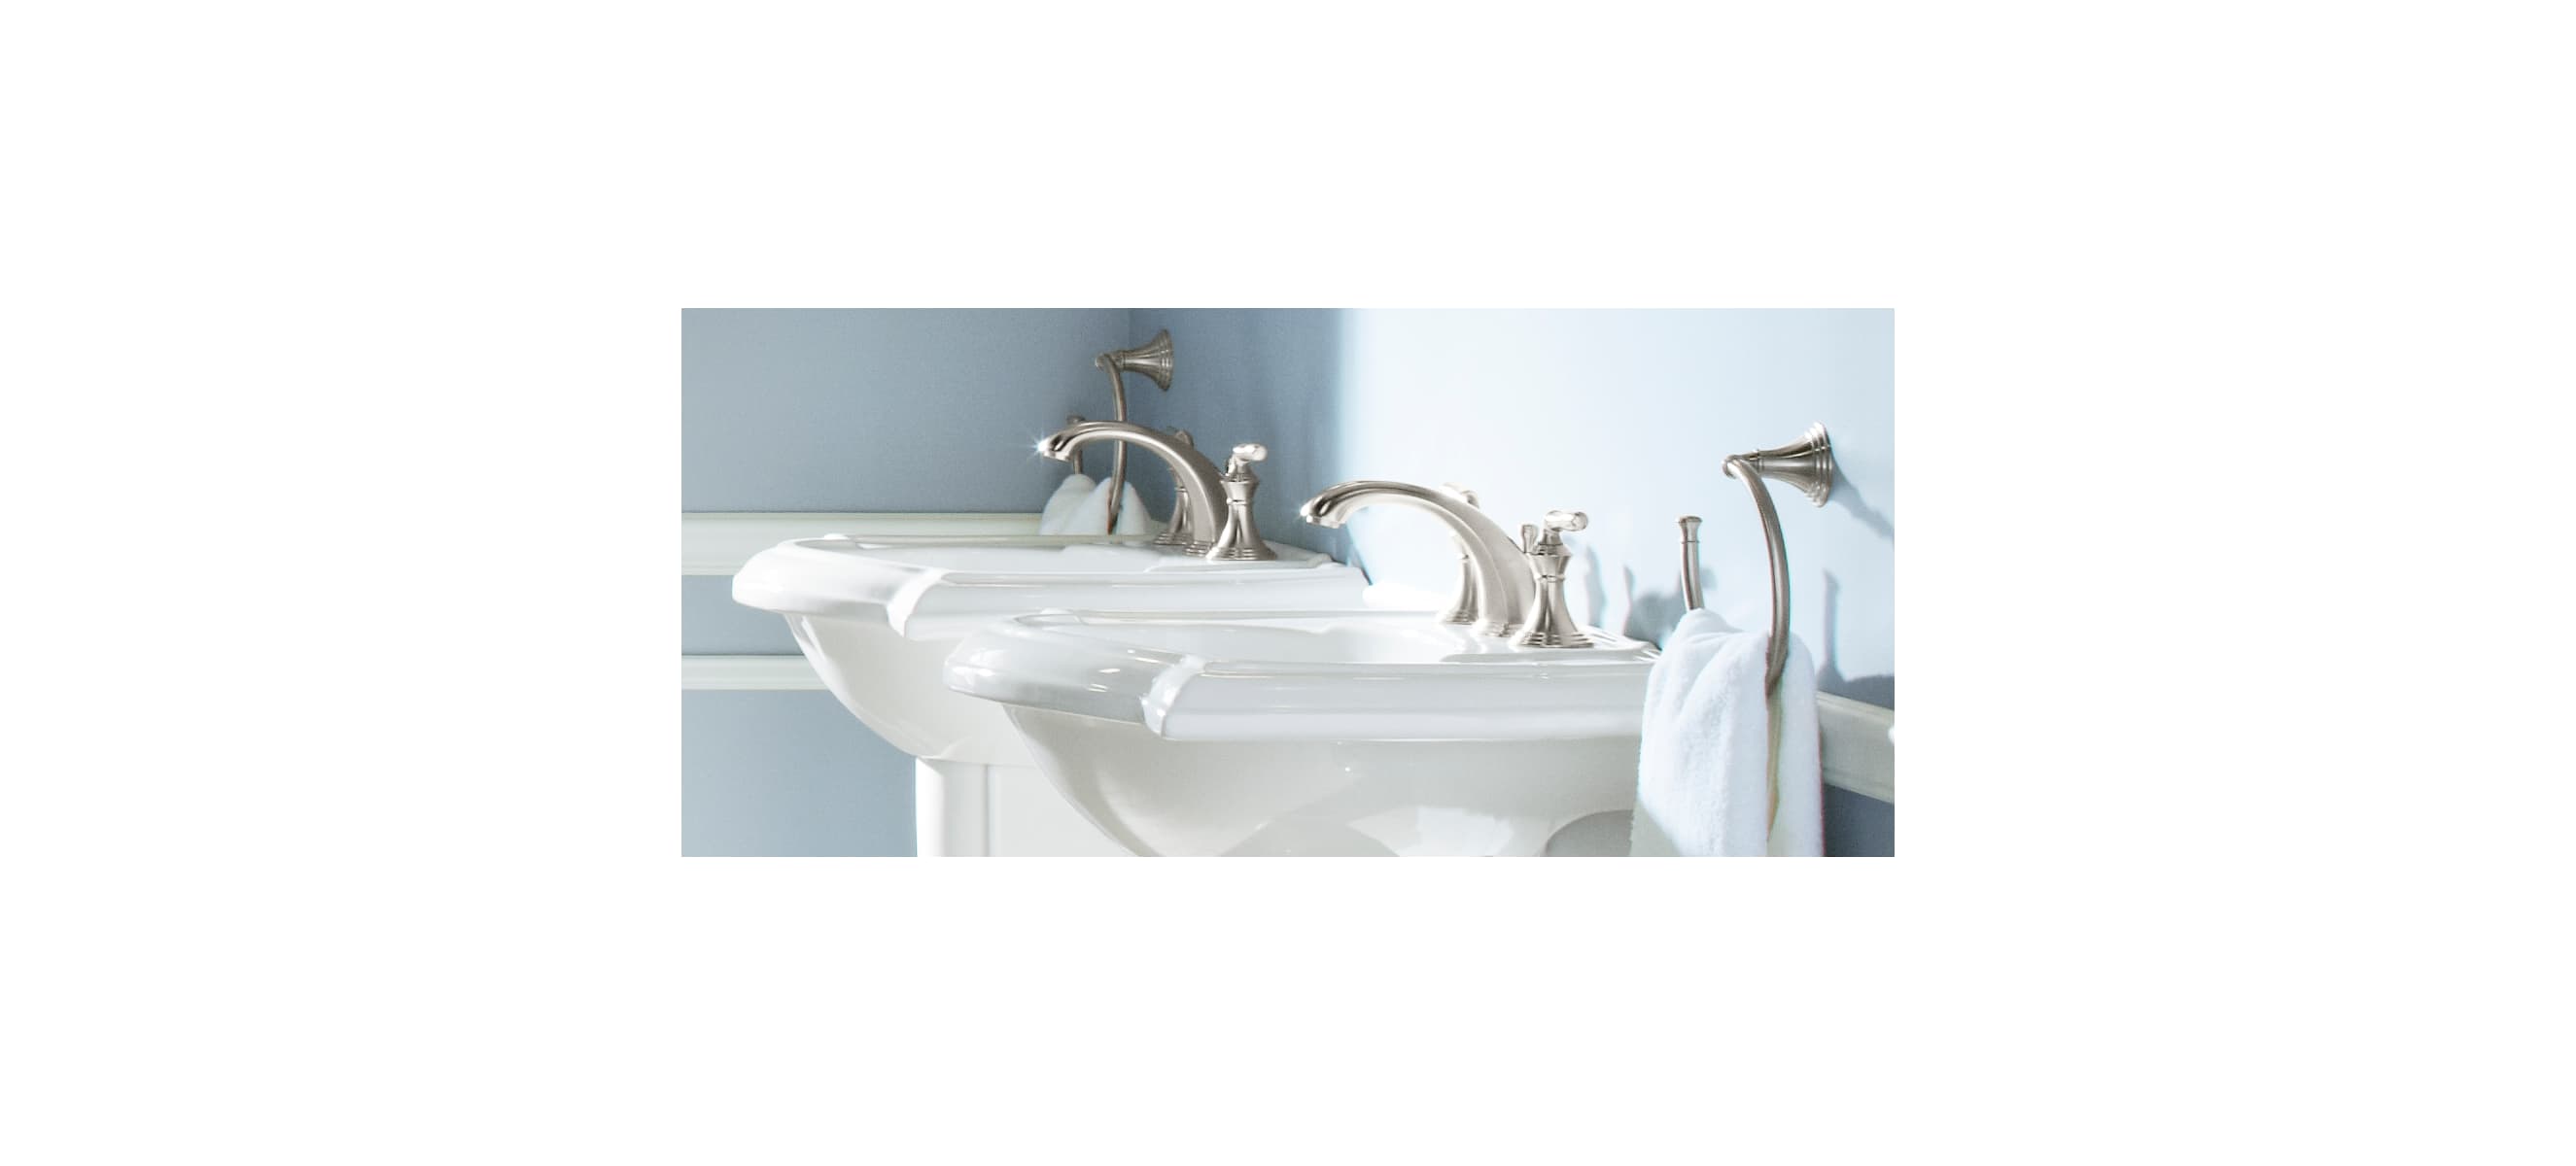 devonshire widespread bathroom sink faucet k 394 4